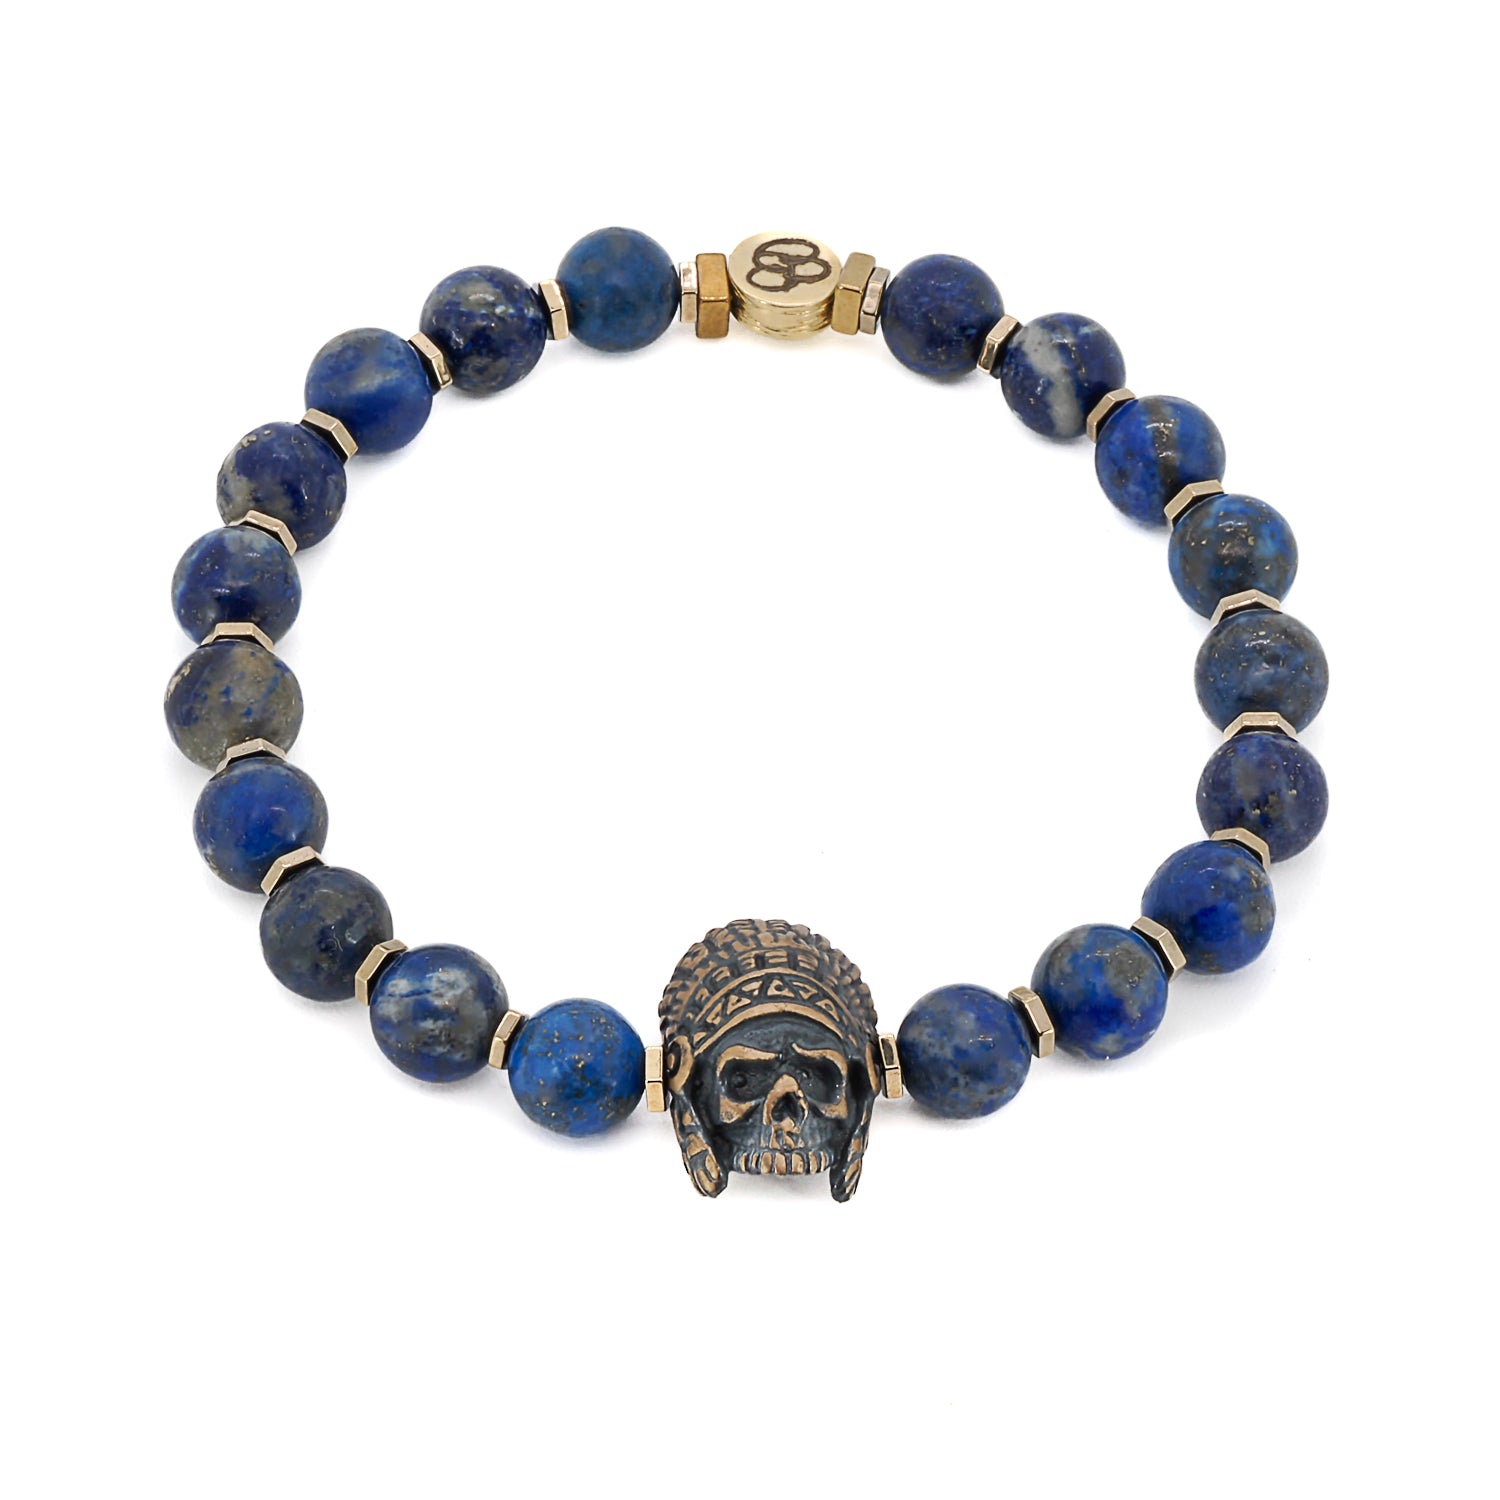 Lapis Lazuli Indian Men's Bracelet - Striking and Bold.